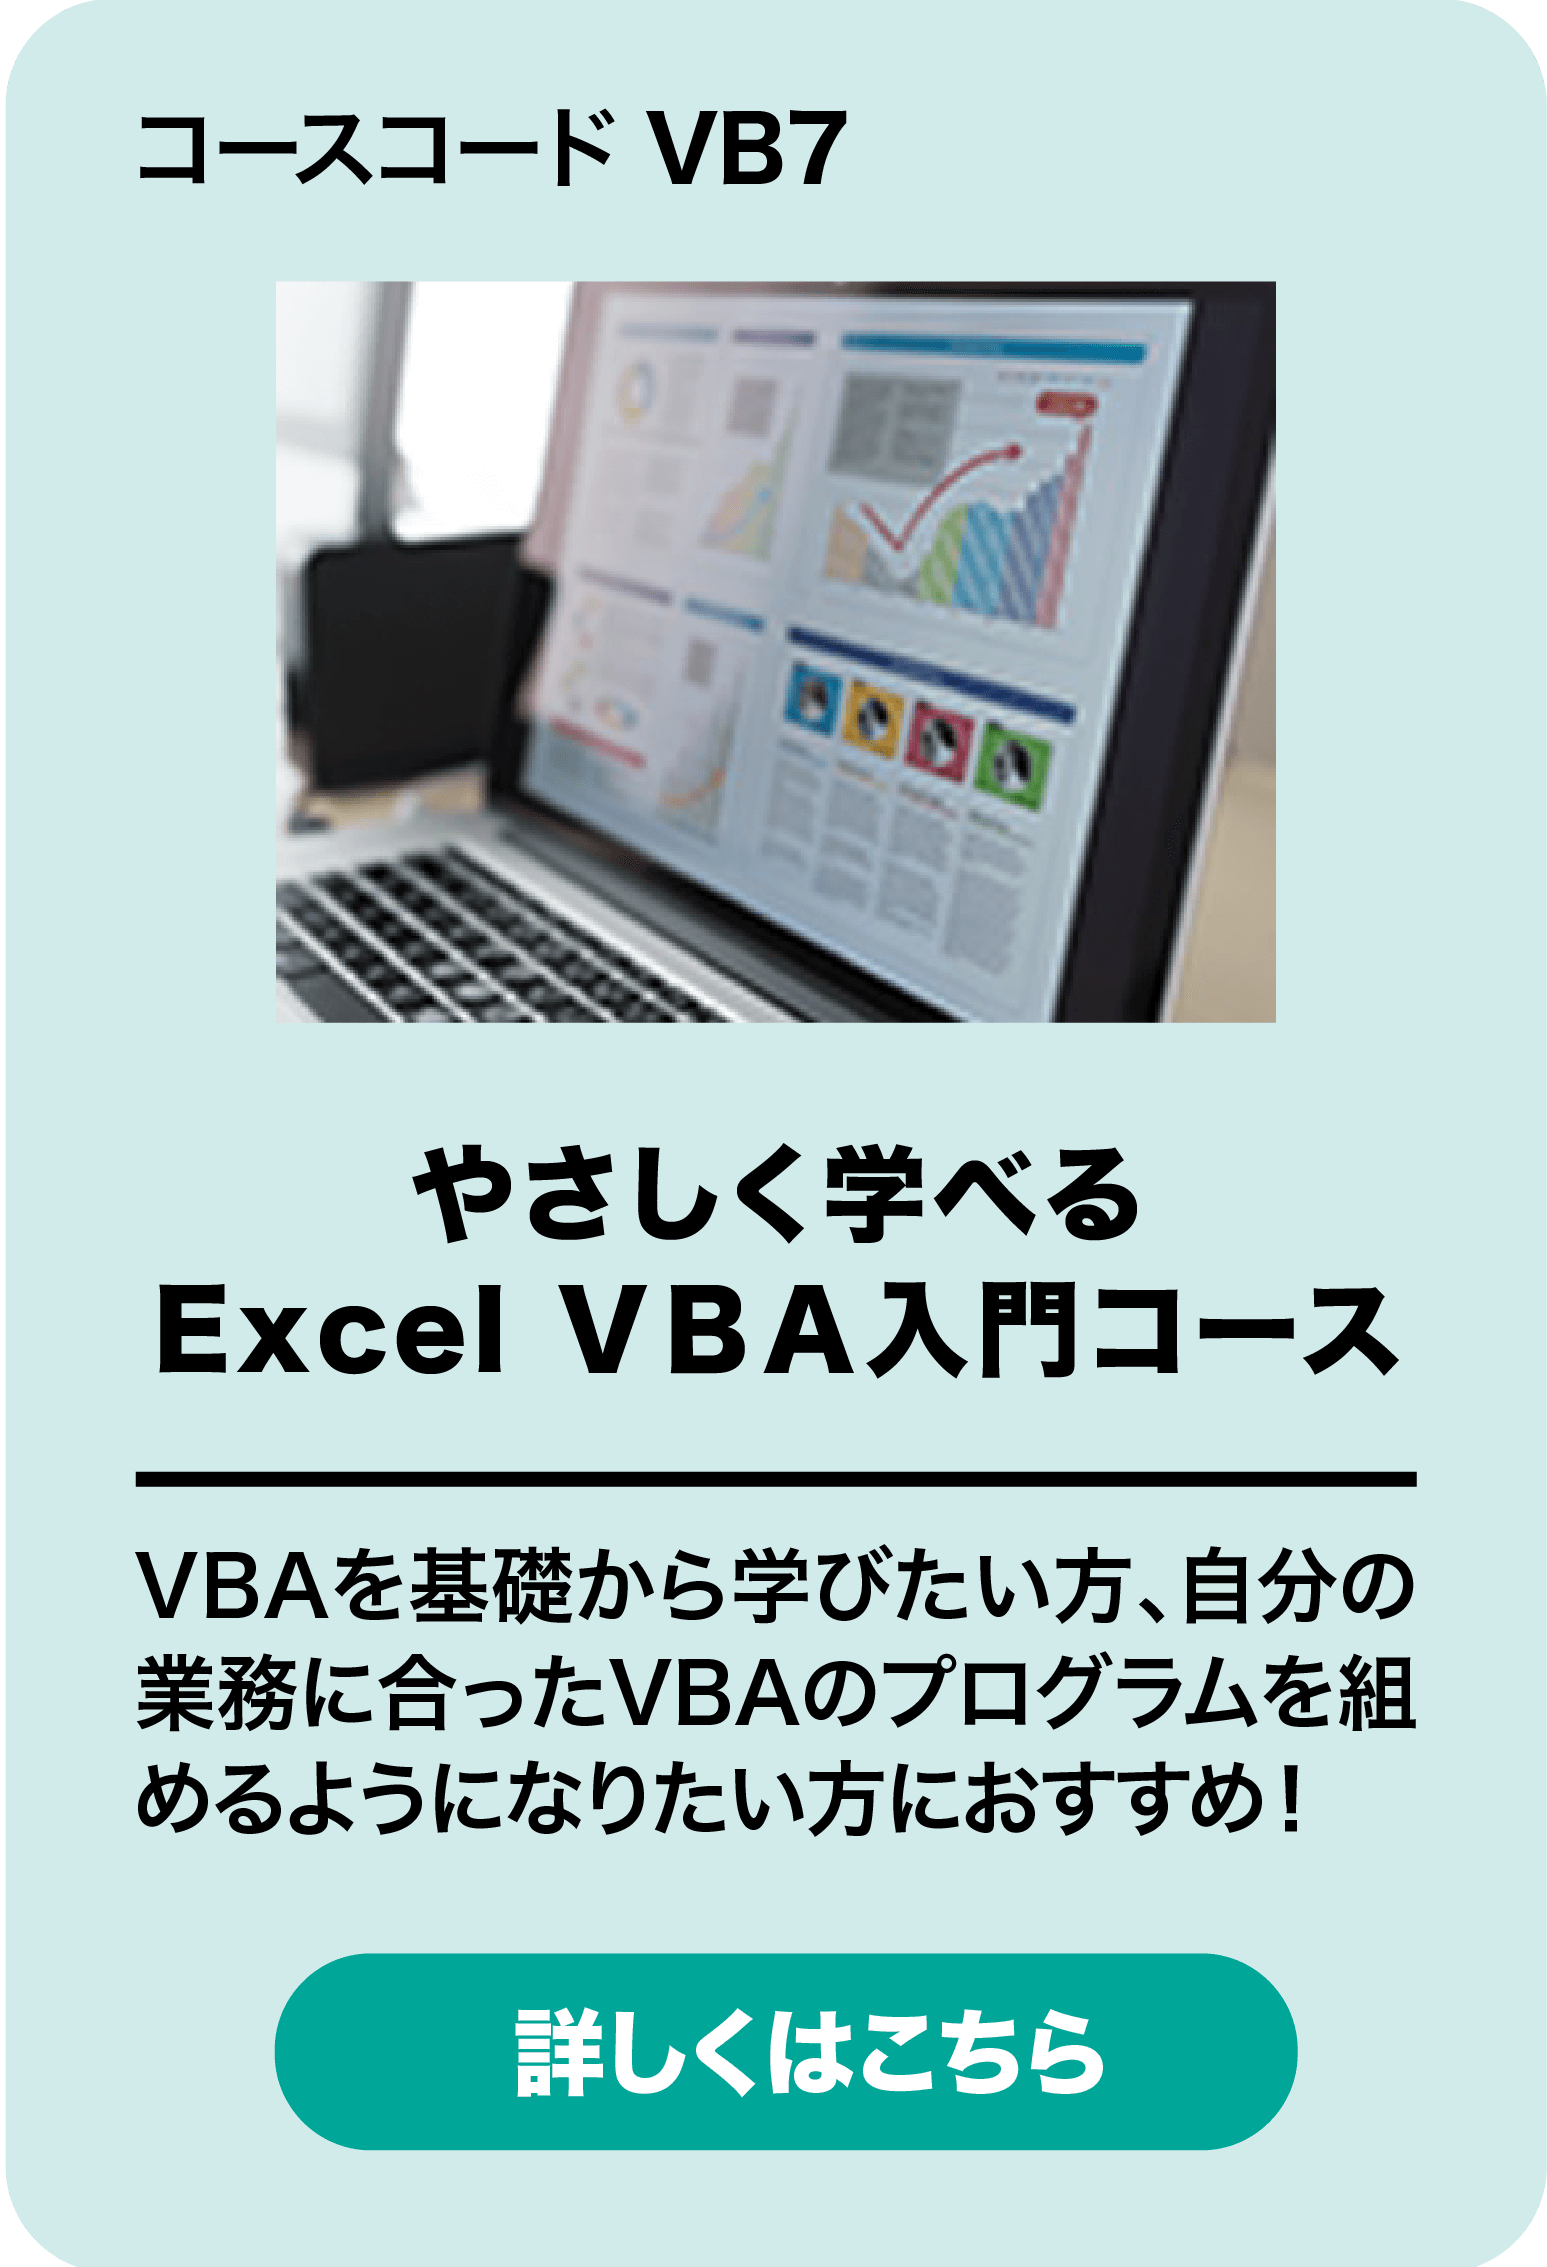 やさしく学べるExcel VBA入門コース